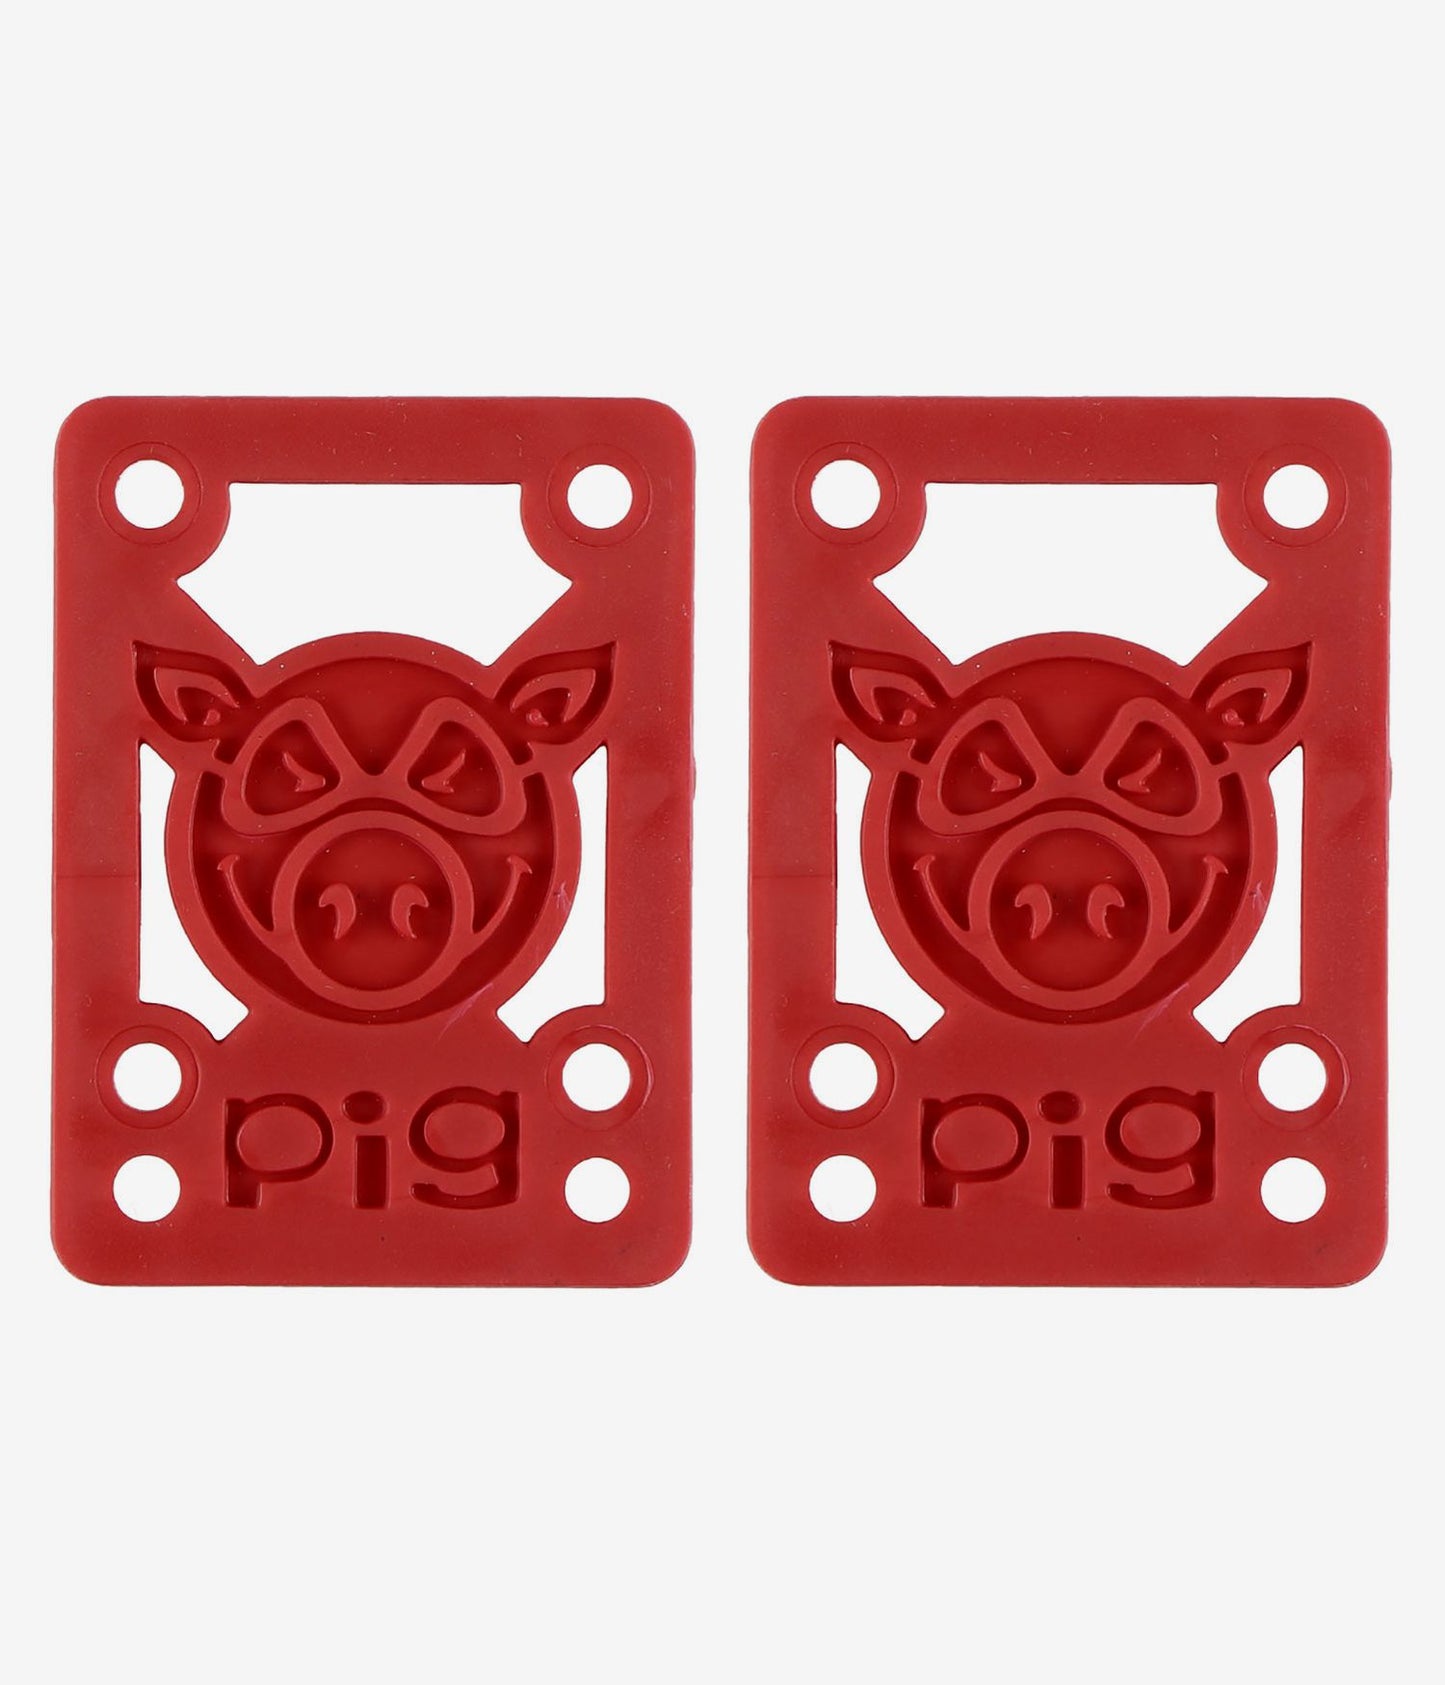 PIG ライザー パッド 1/8 インチ - レッド